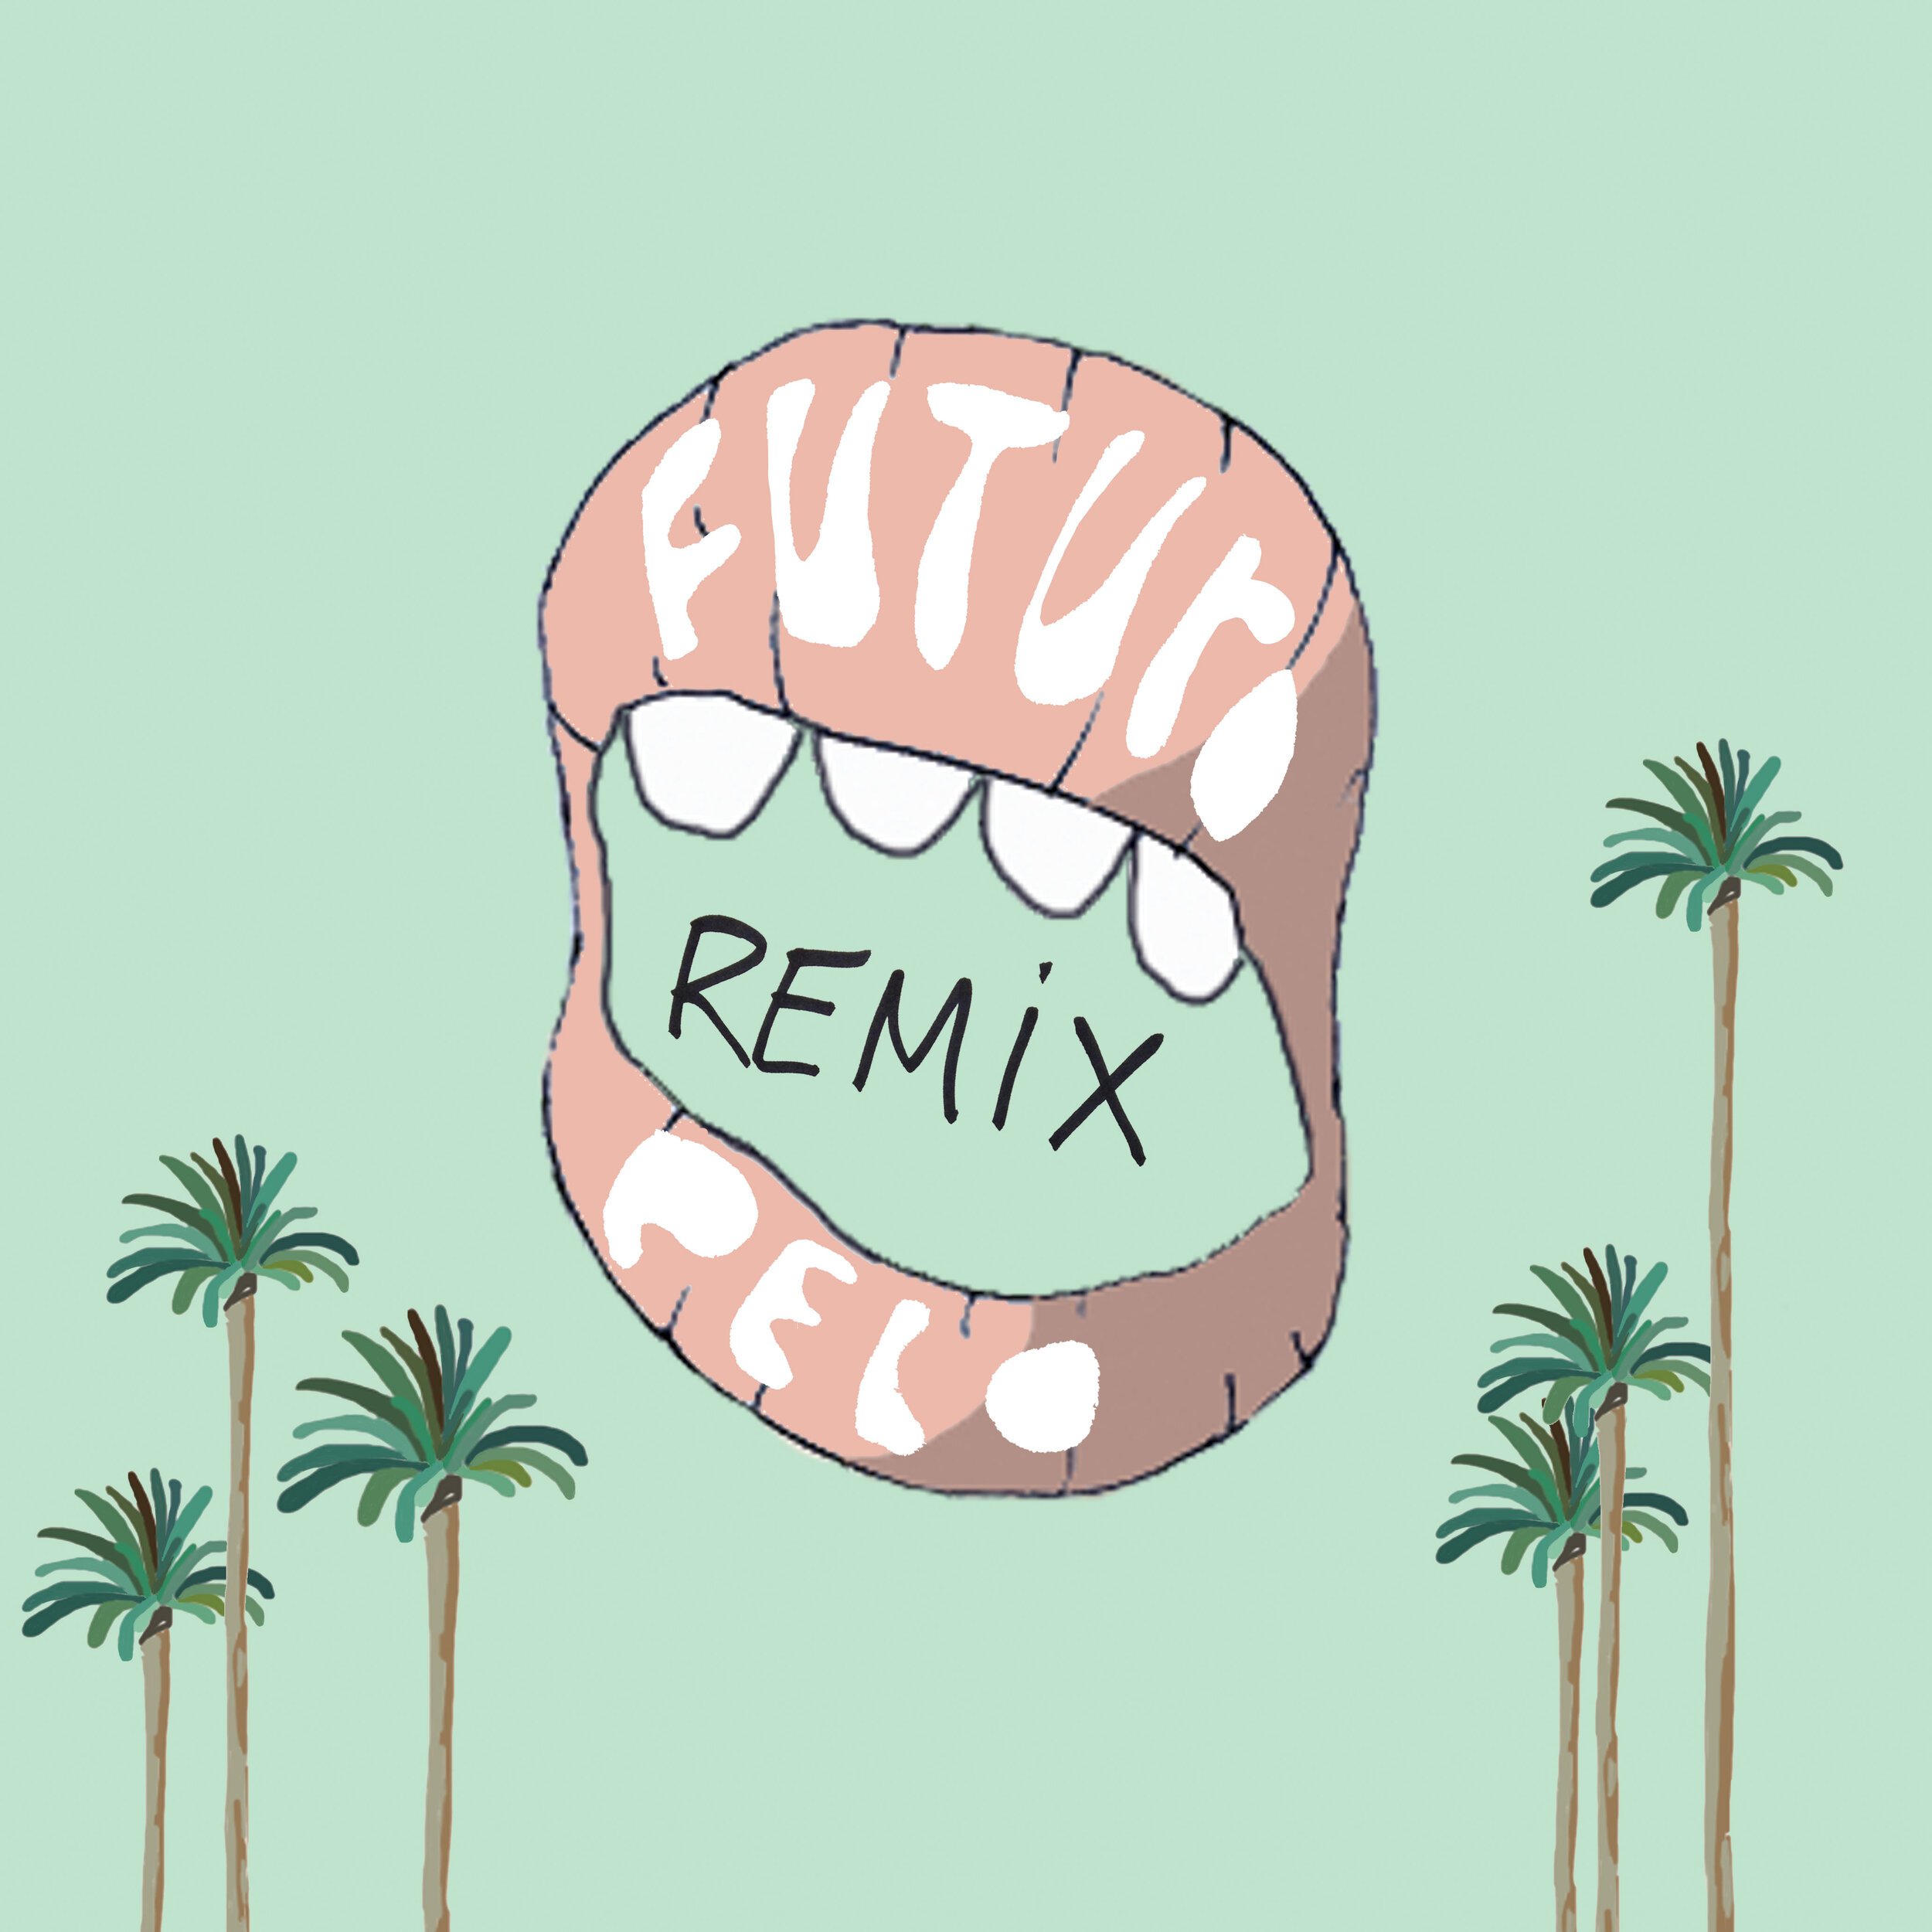 Futuro_bluff-remix.jpg